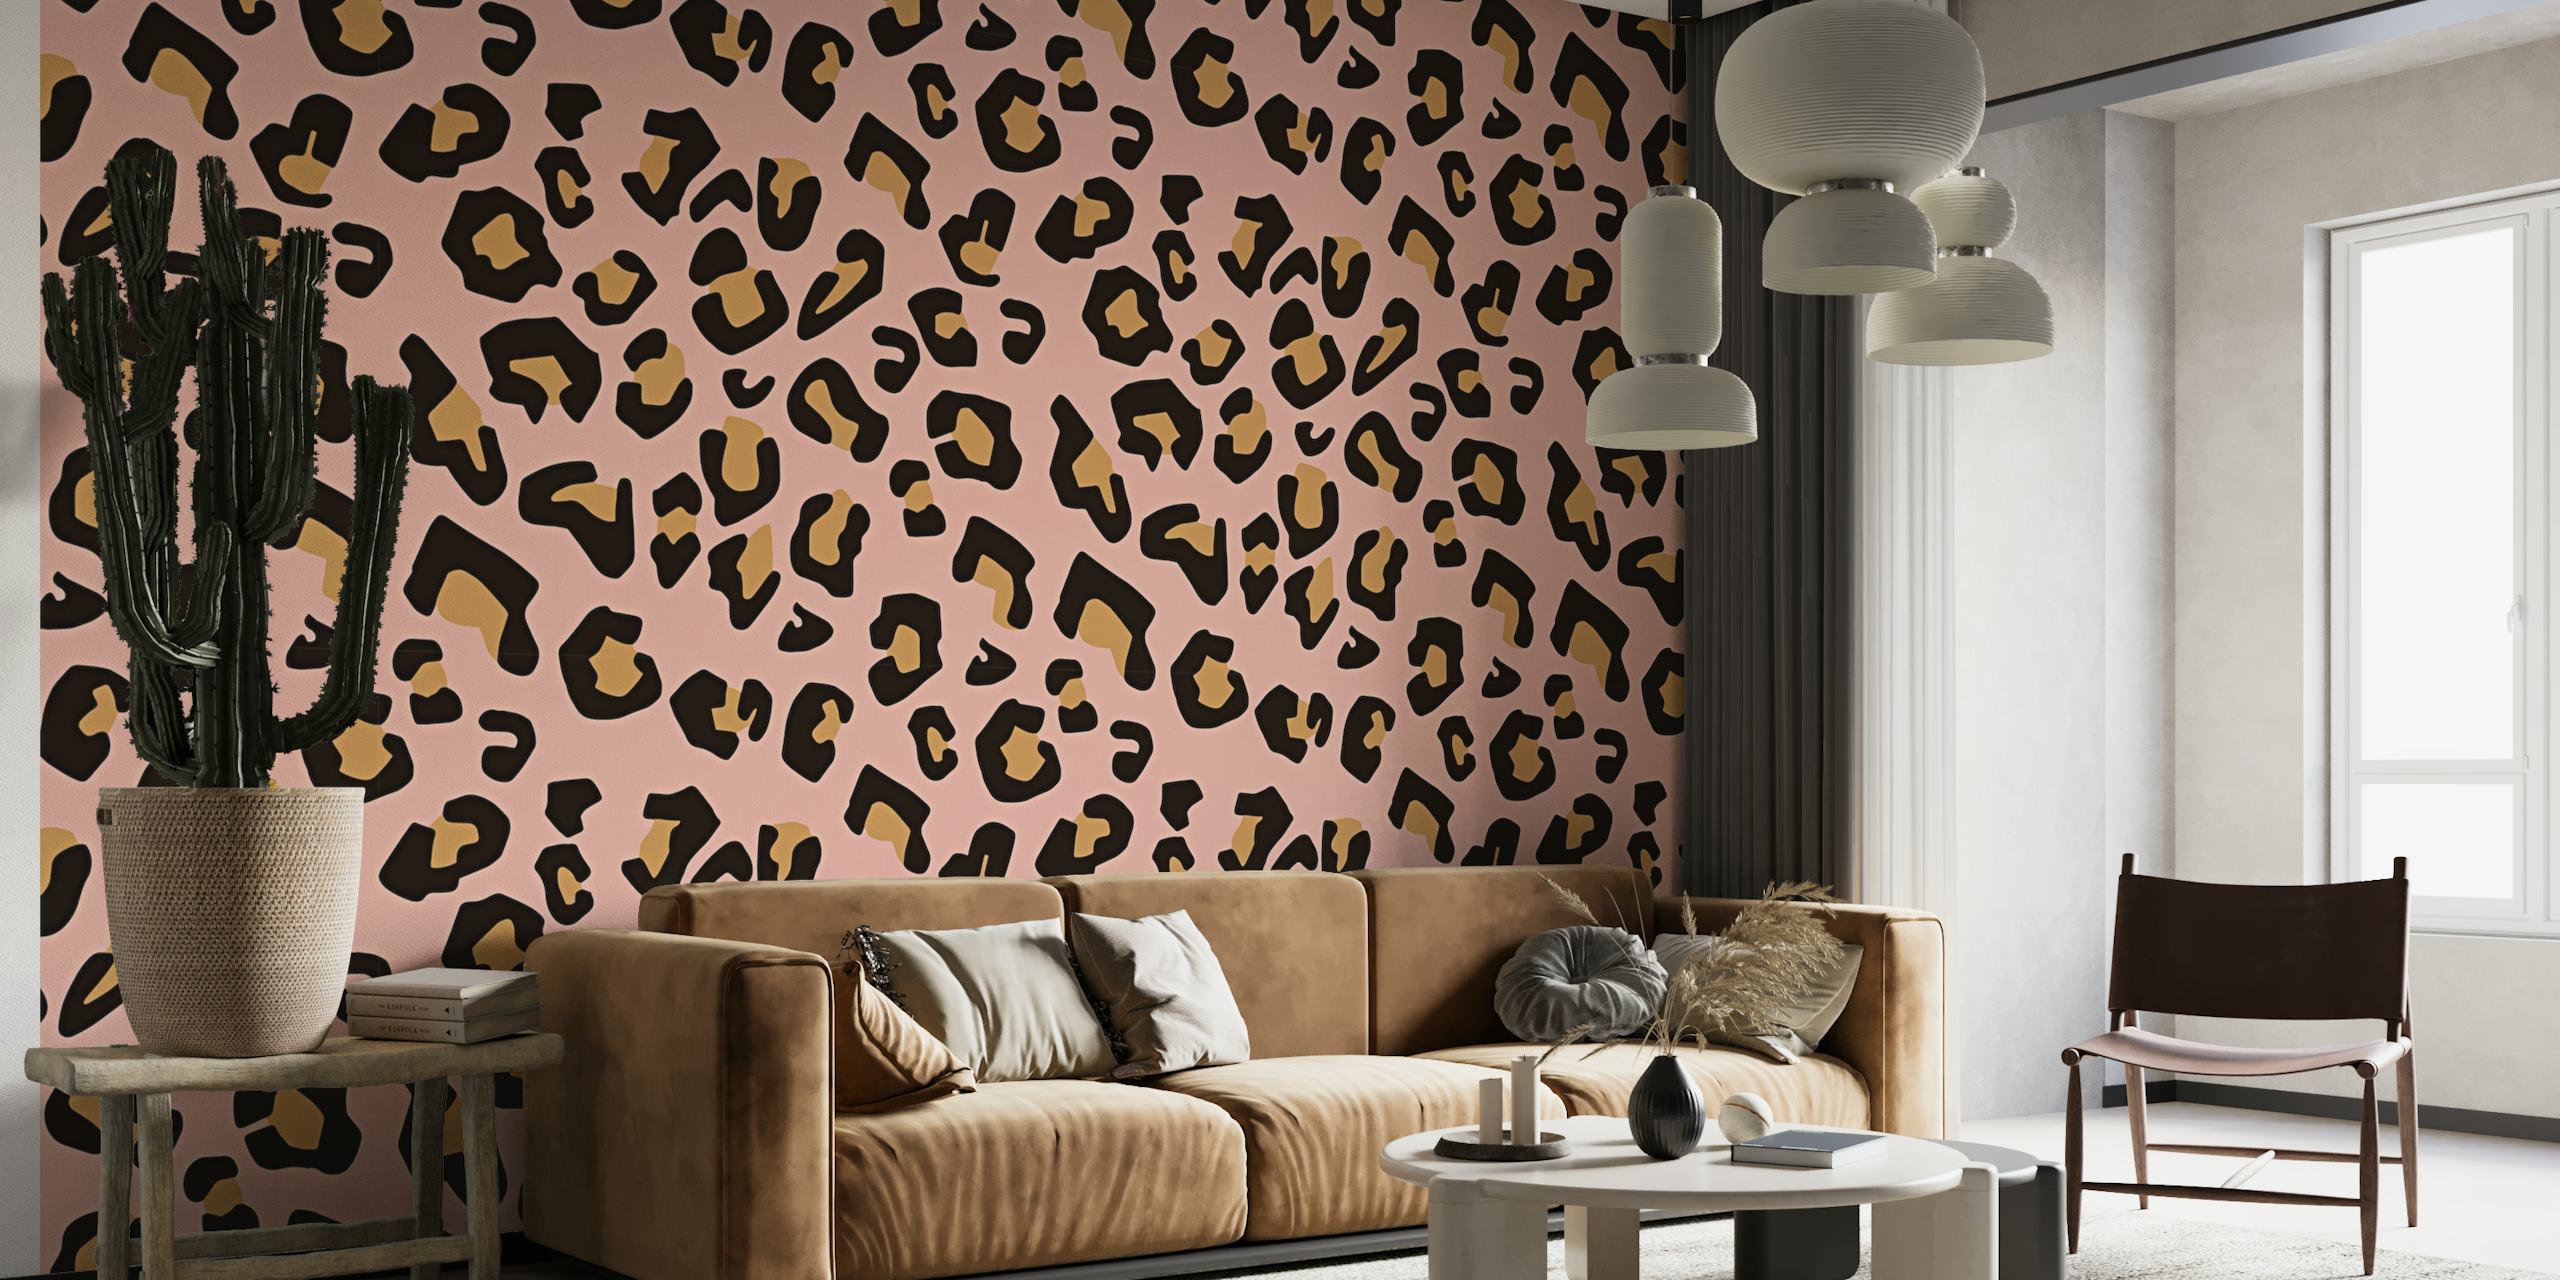 Moderne vægmaleri med leopardmønster på en lyserød baggrund